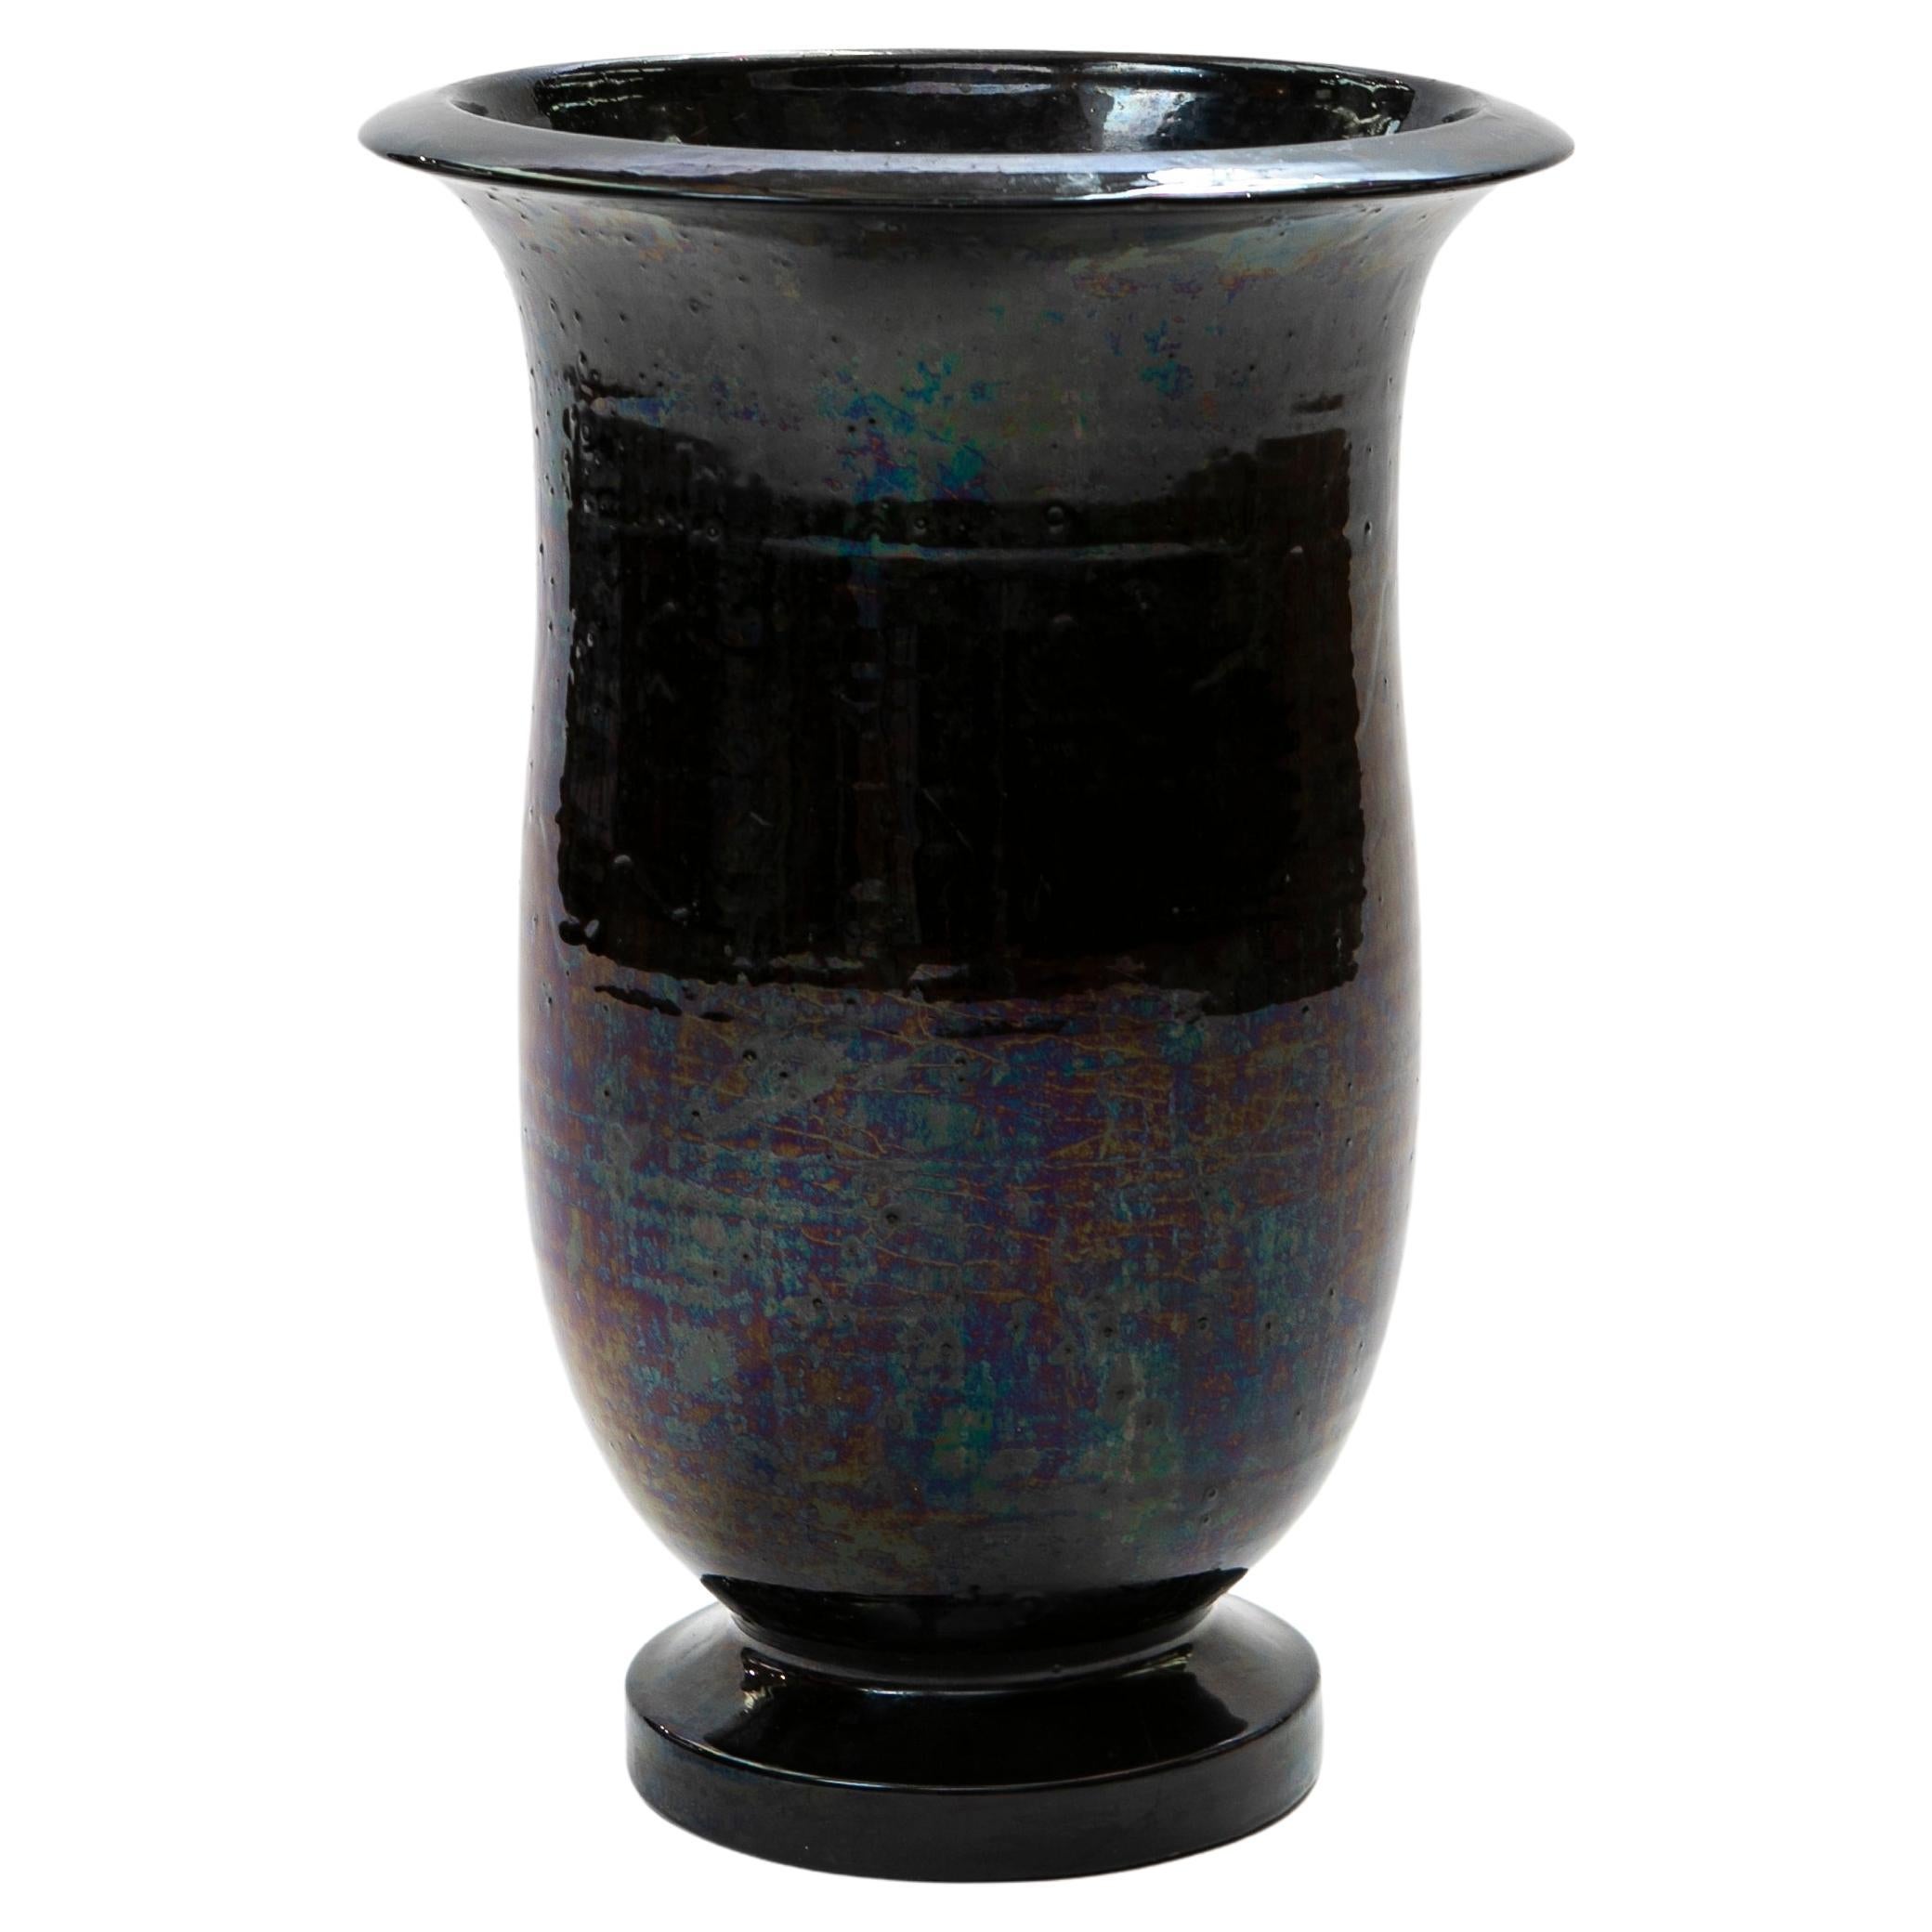 Grand vase de sol Kähler avec glaçure lustrée noire